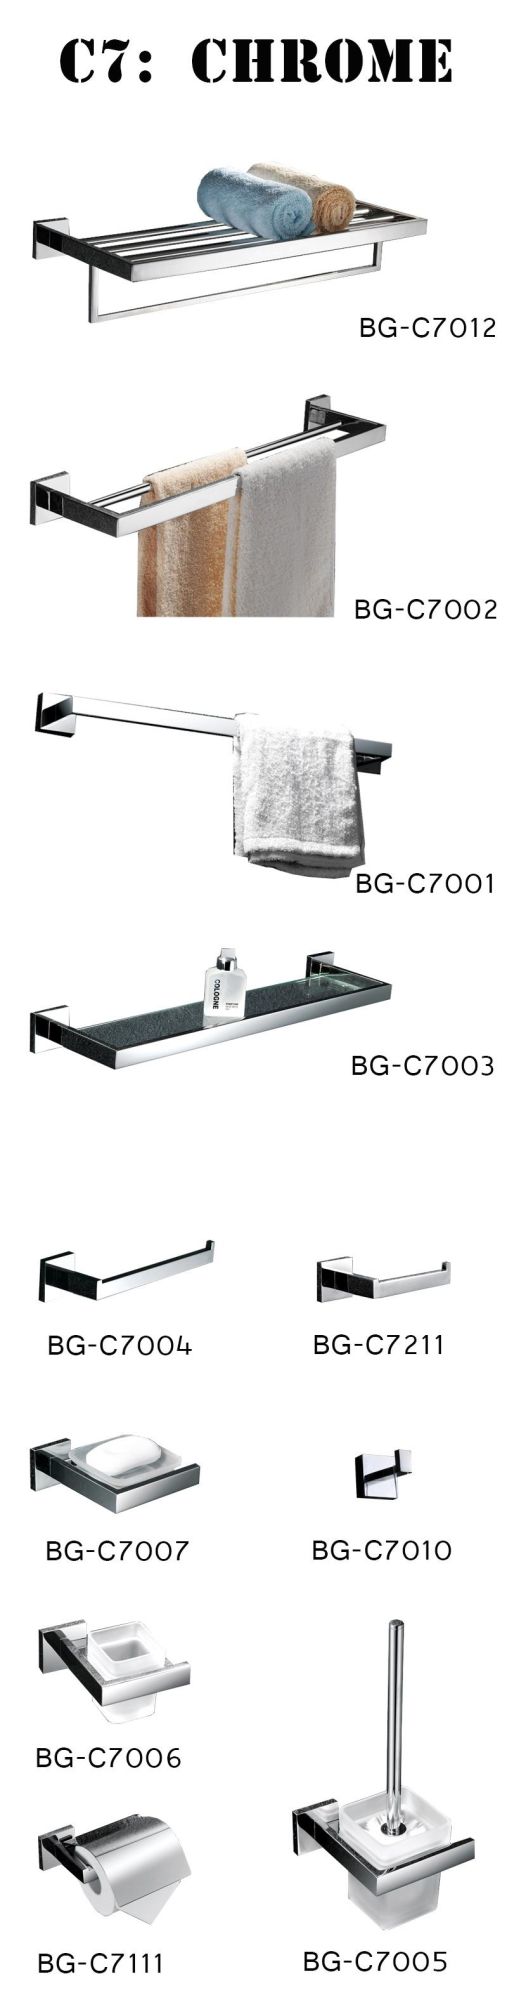 Chrome Stainless Steel with Matt Glass Toilet Brush Holder Bg-C7005